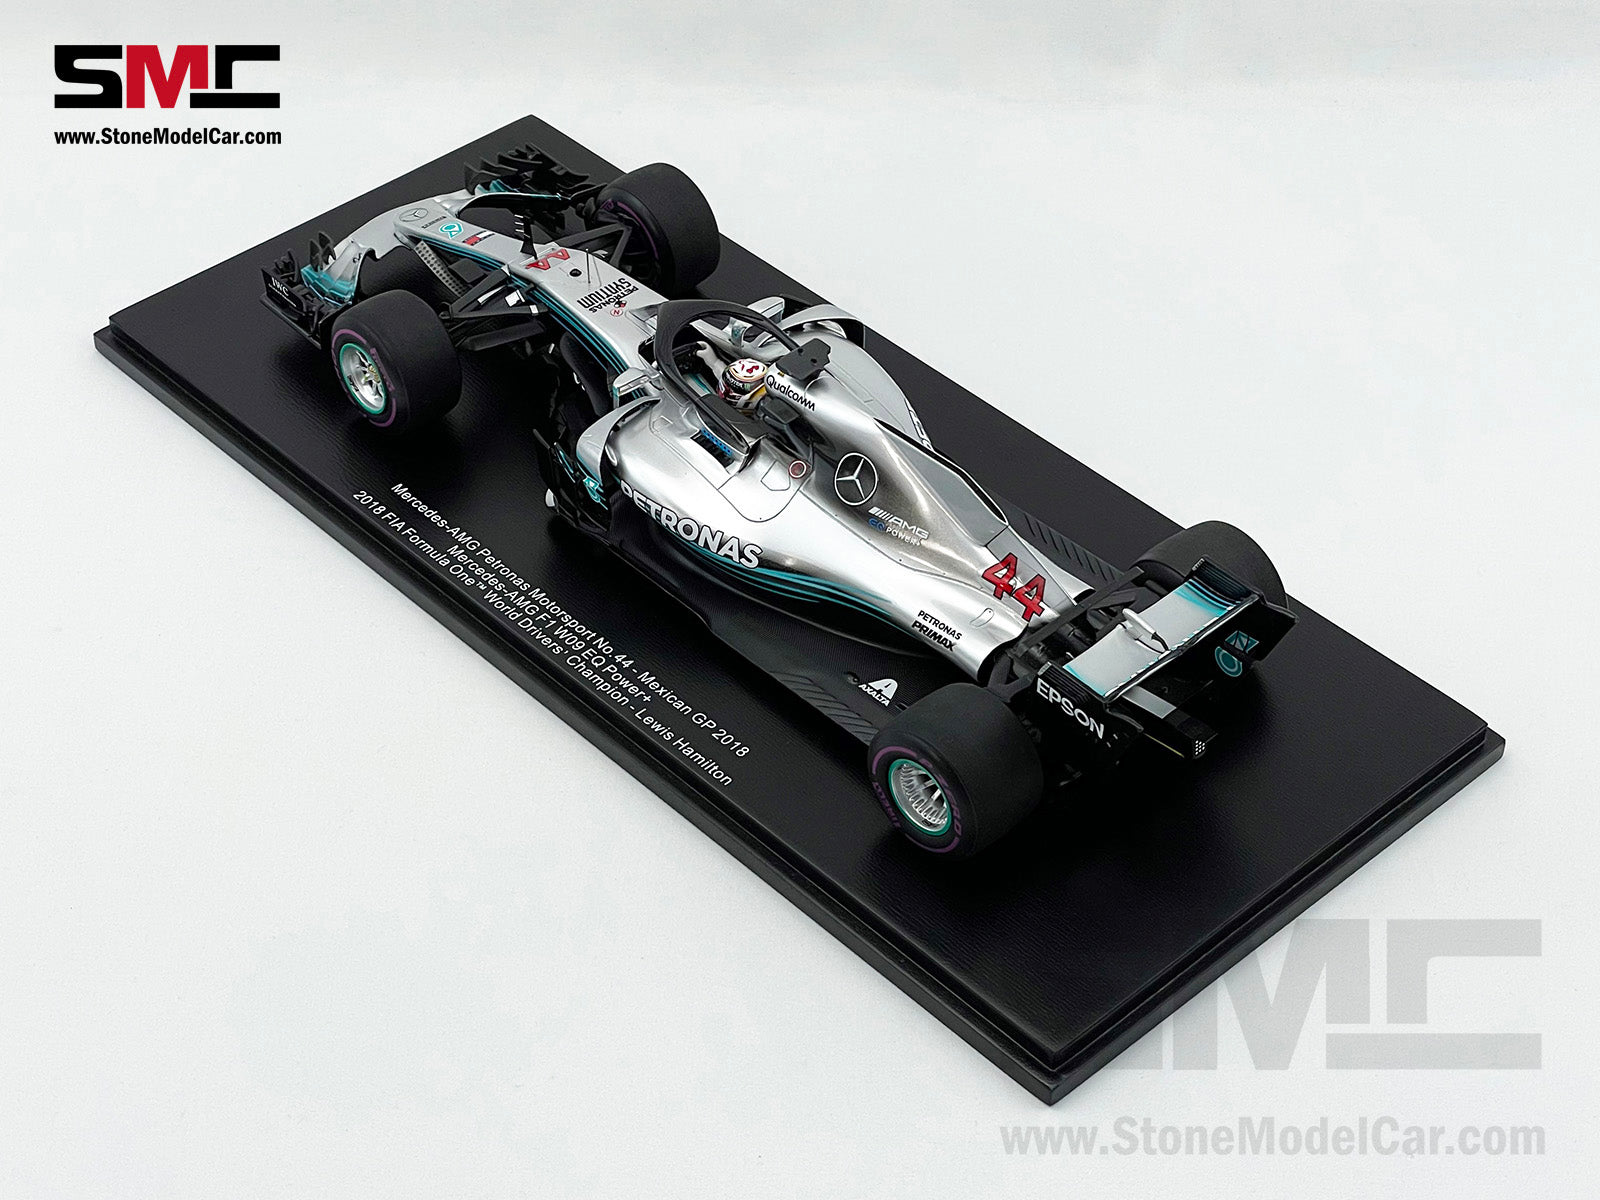 【超歓迎得価】スパーク 1/18 Mercedes-AMG F1 W09 #44 2018 ミニカー